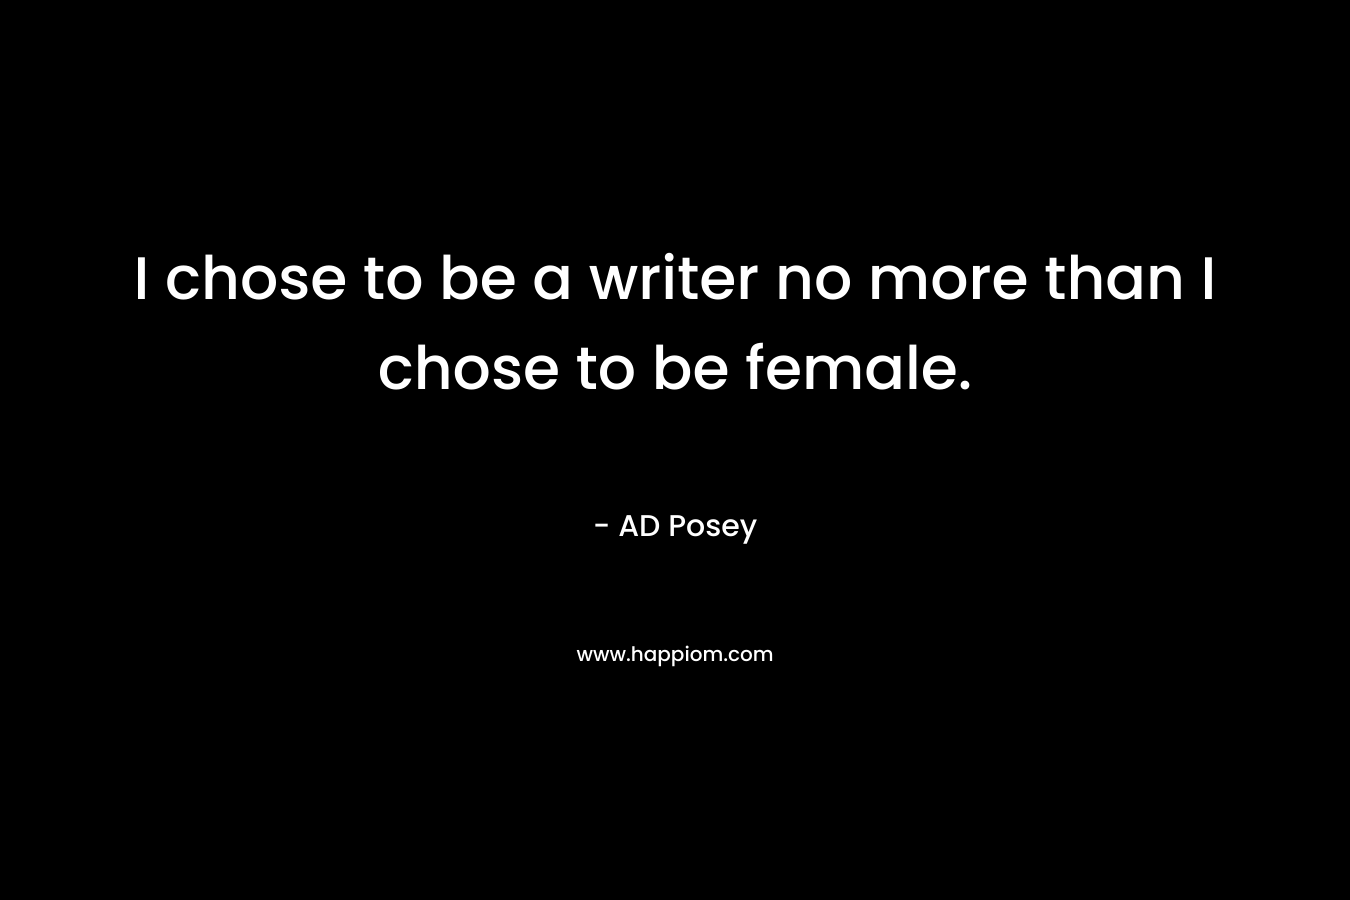 I chose to be a writer no more than I chose to be female.